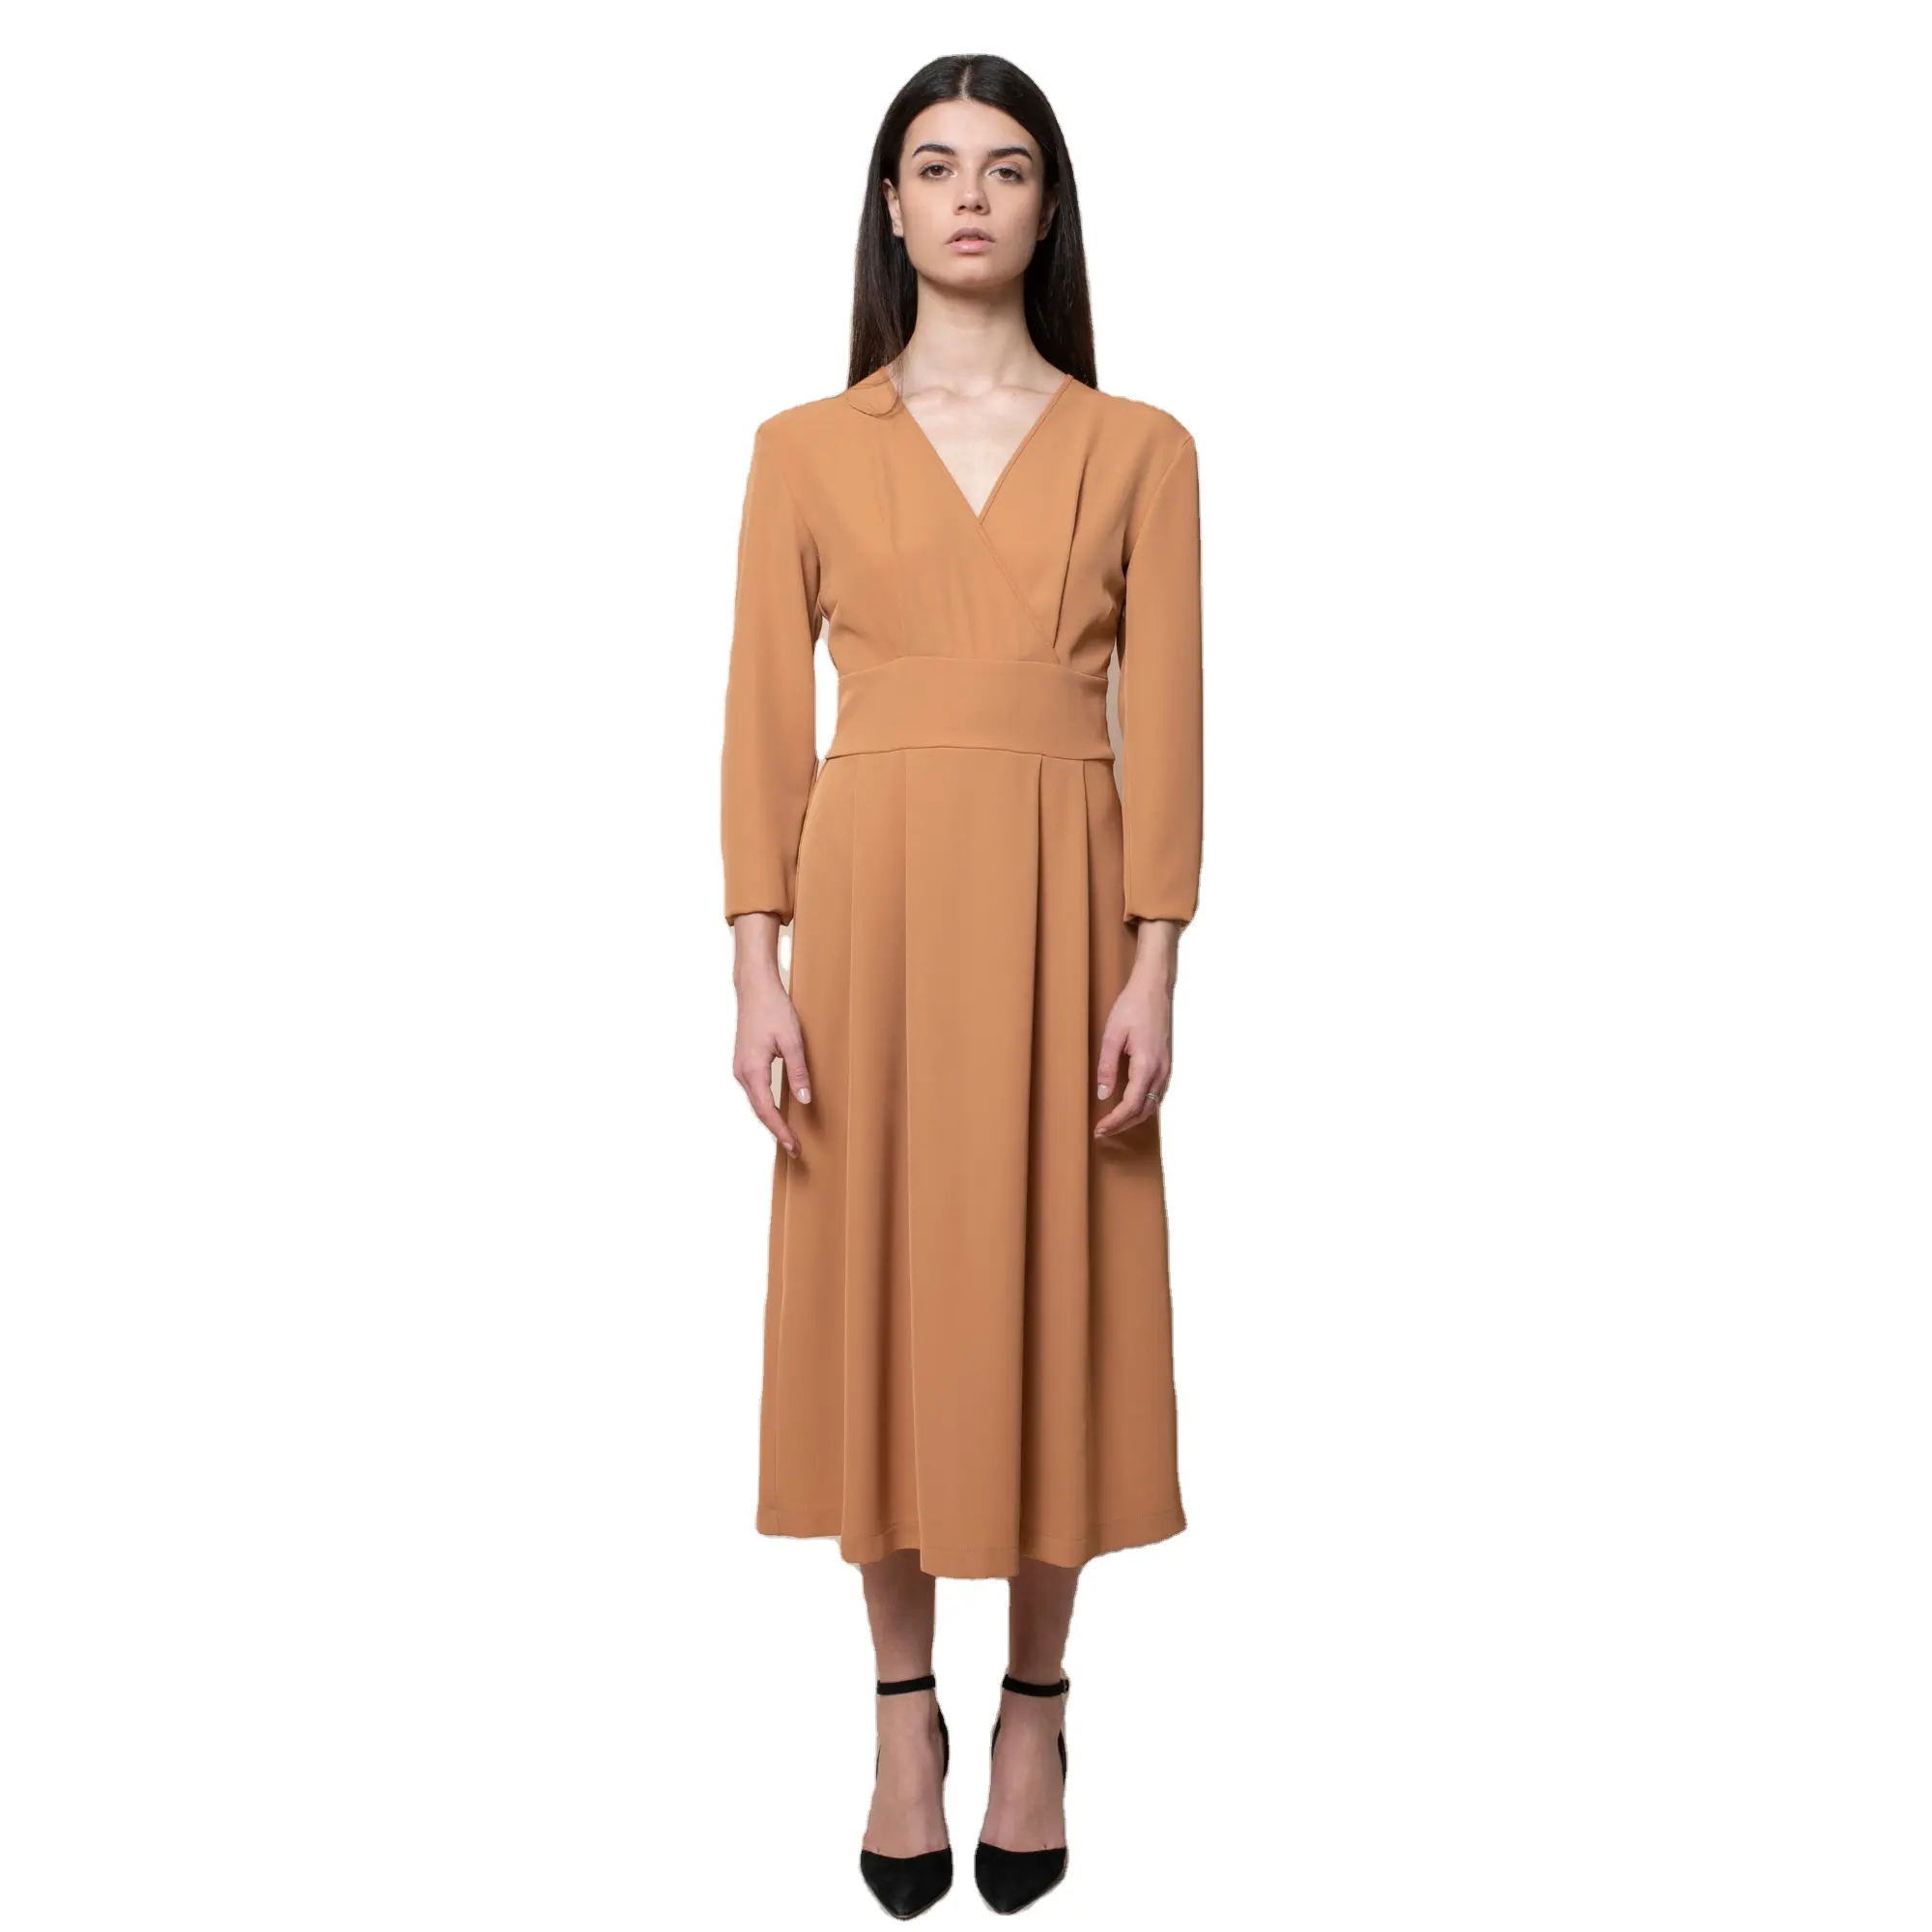 100% italienische beste Qualität langes Kleid Empire-Stil 3/4 Ärmel V-Ausschnitt mit unsichtbarem Reiß verschluss an der Seite für Zeremonien